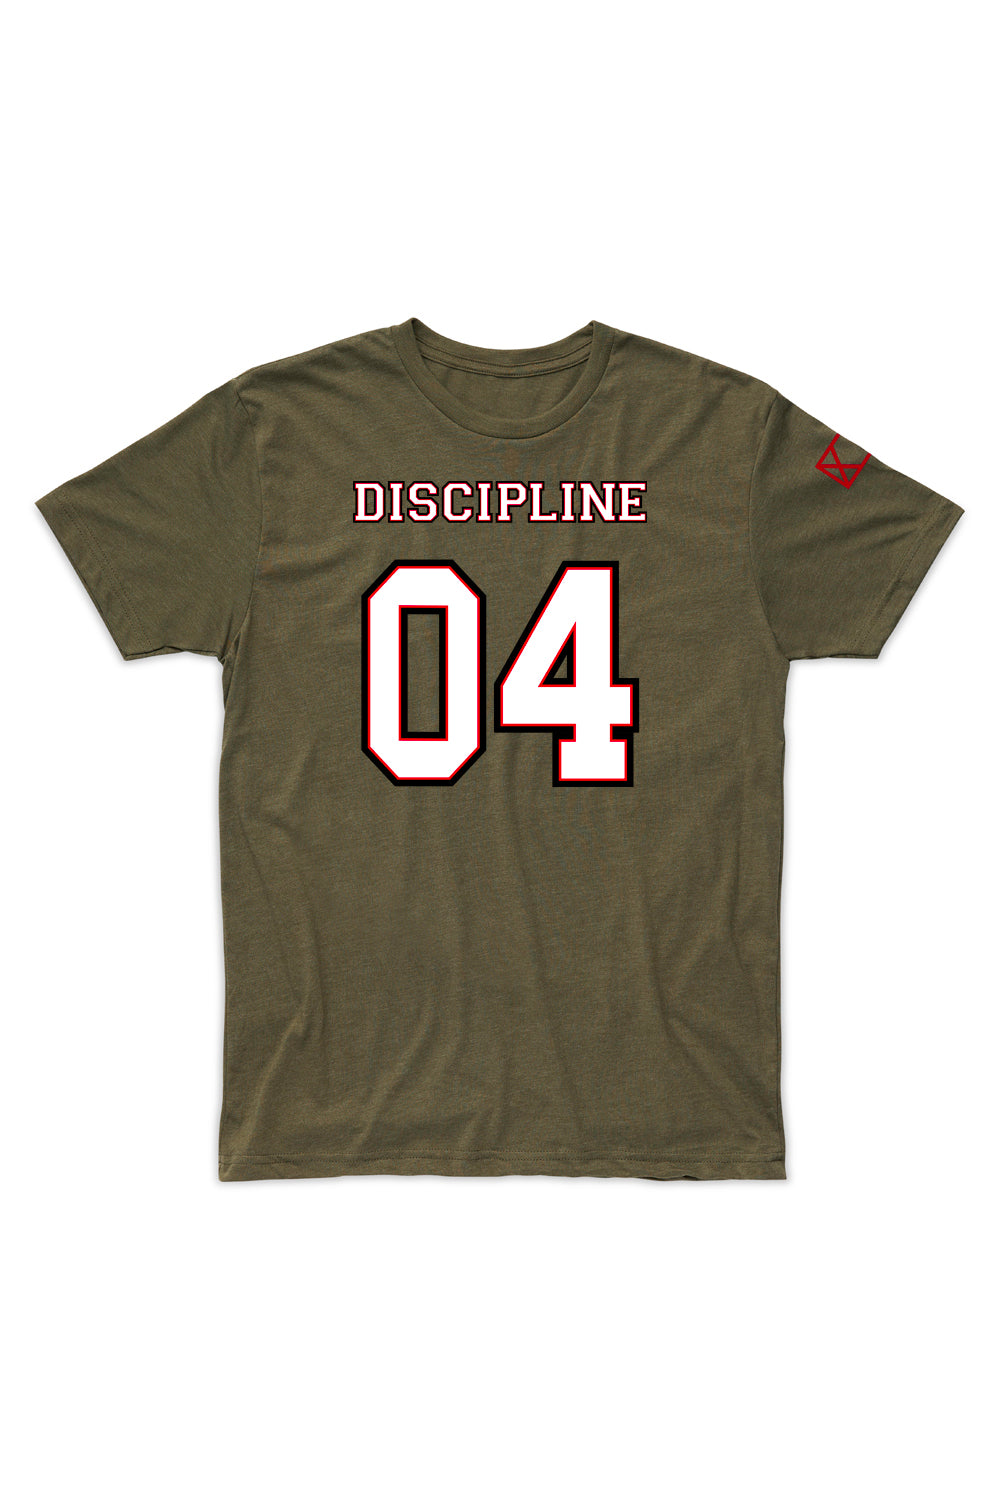 Team Discipline - April '21